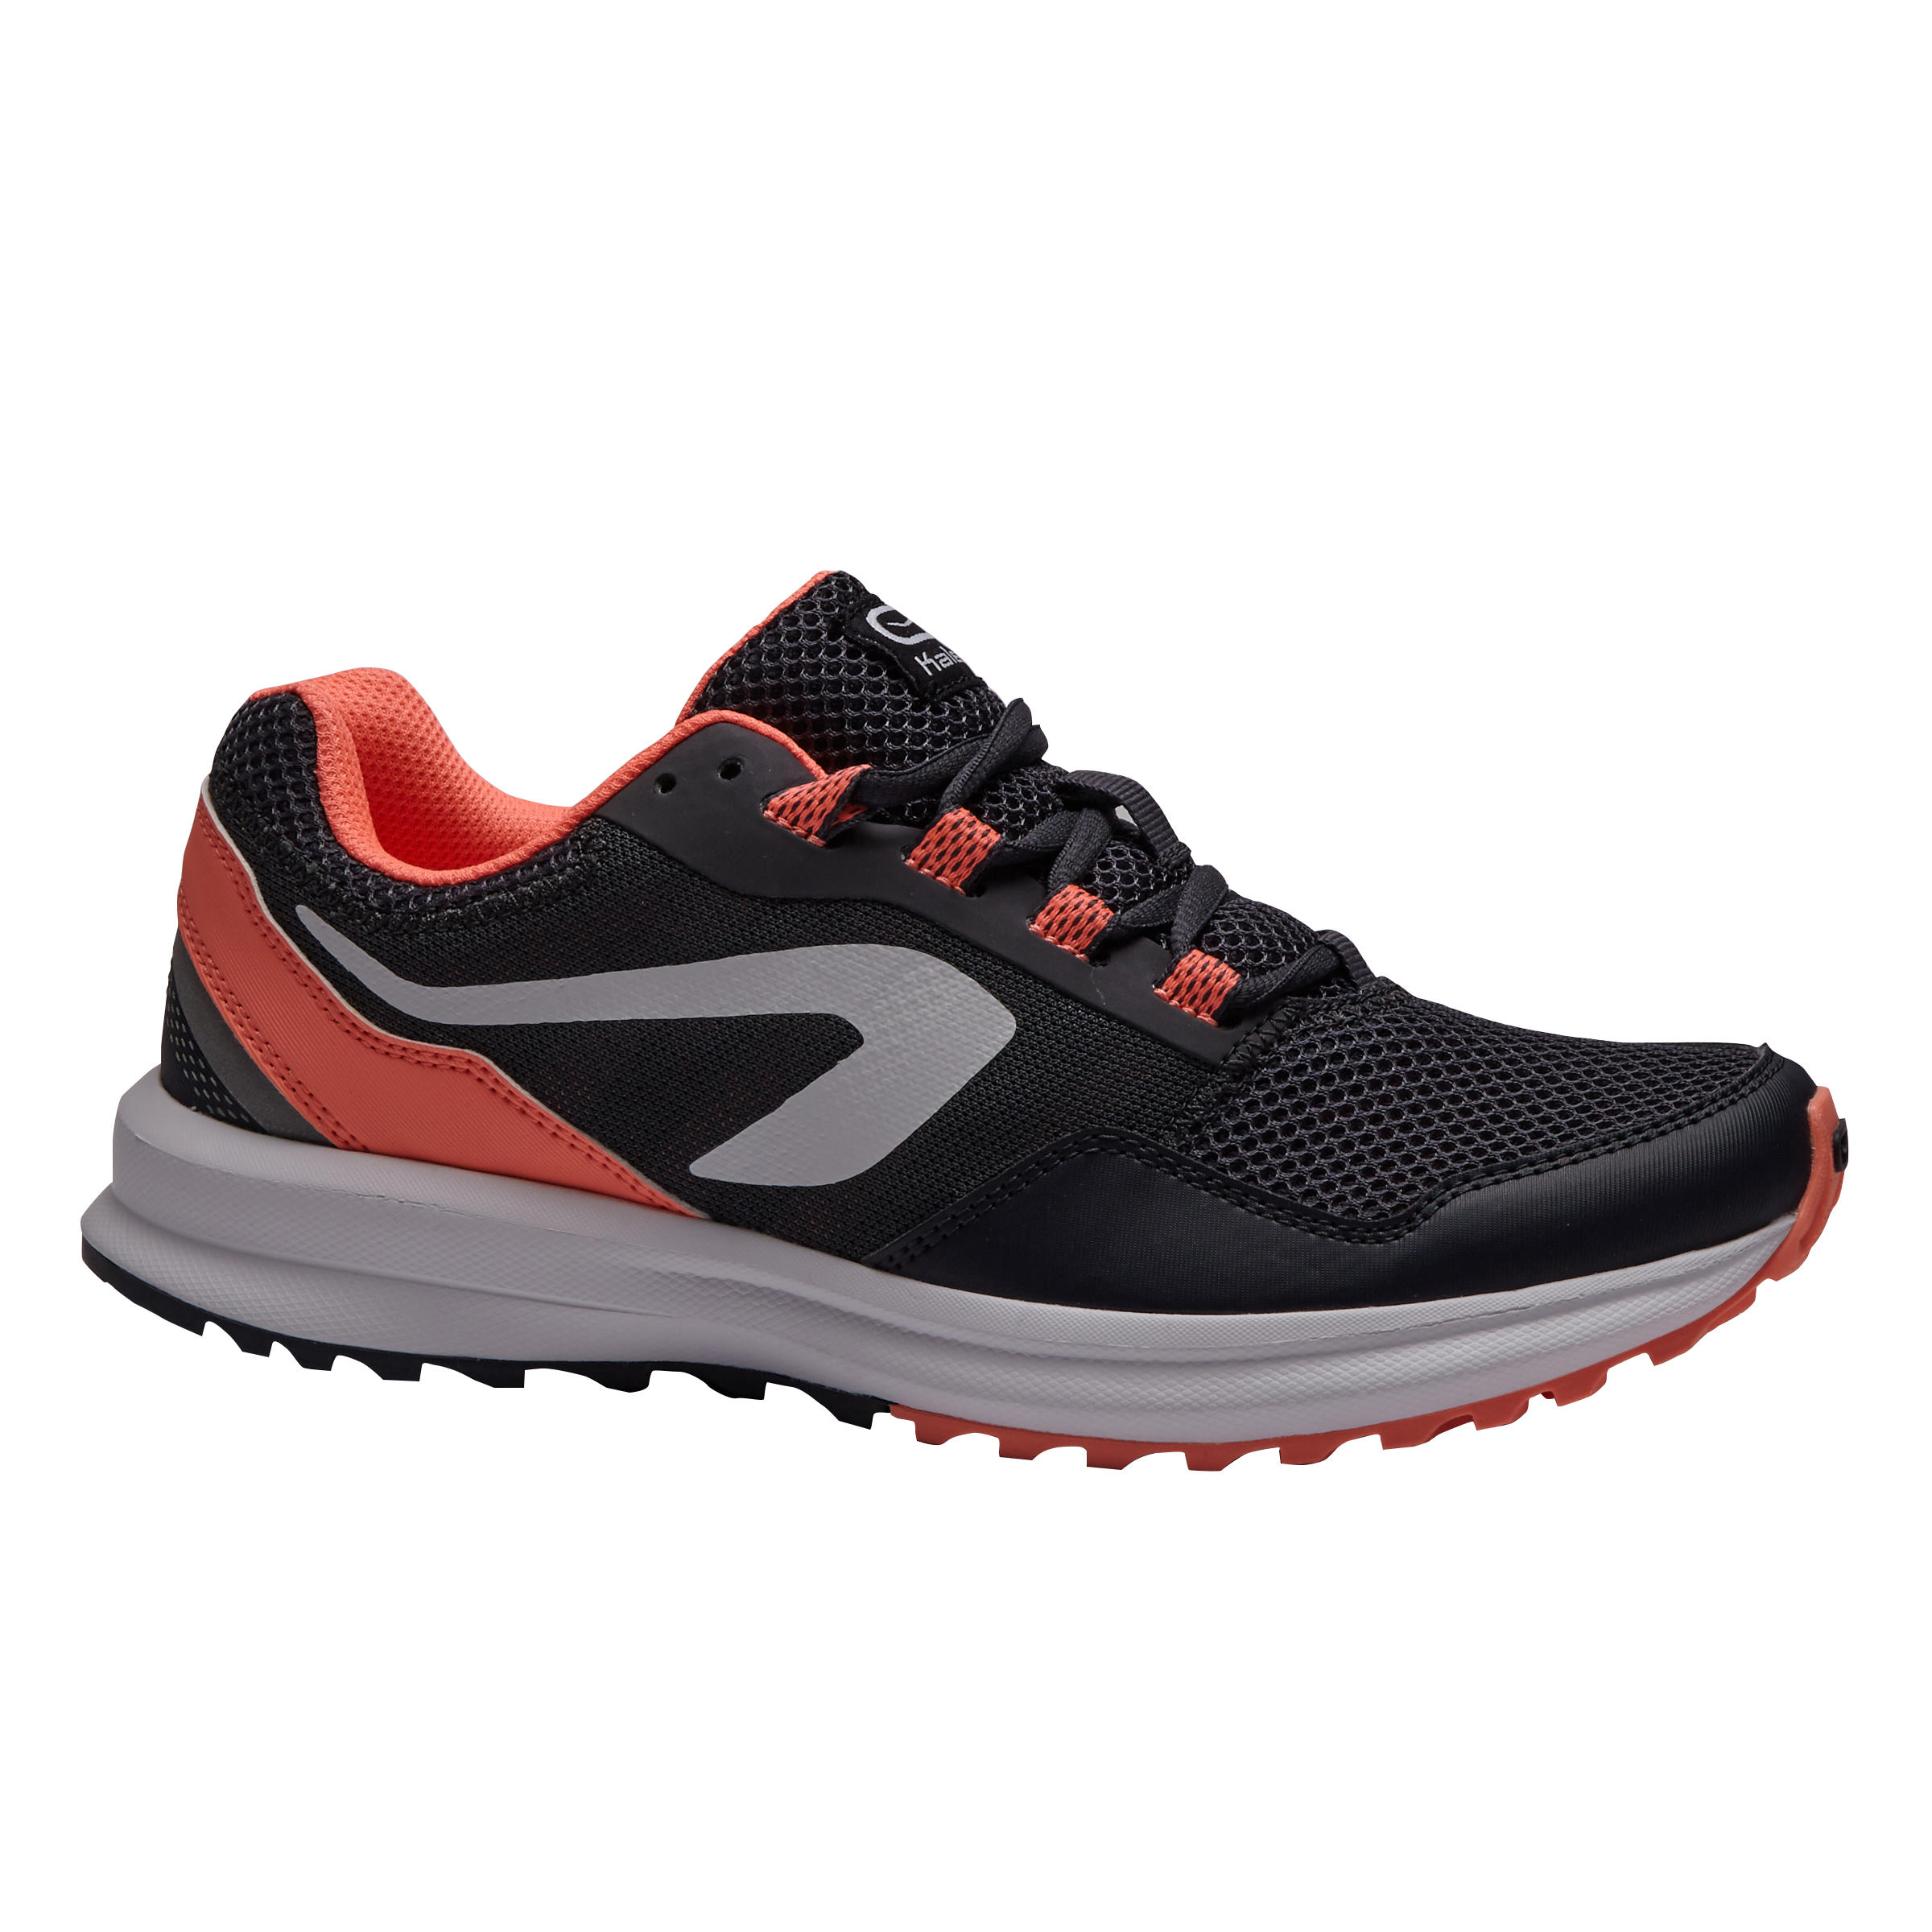 kalenji running shoes price